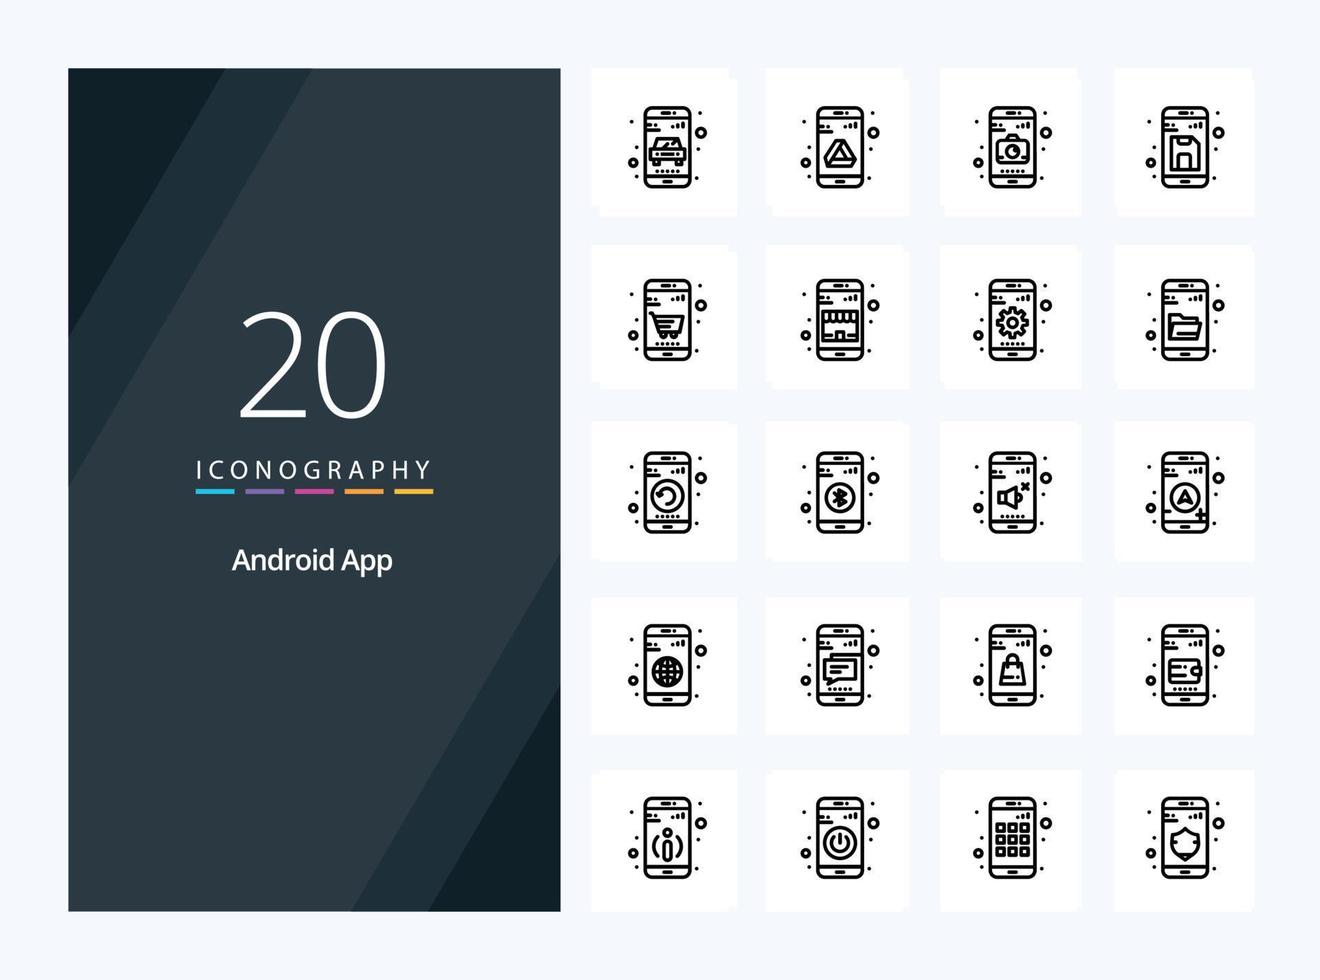 20 Gliederungssymbol für Android-Apps zur Präsentation vektor